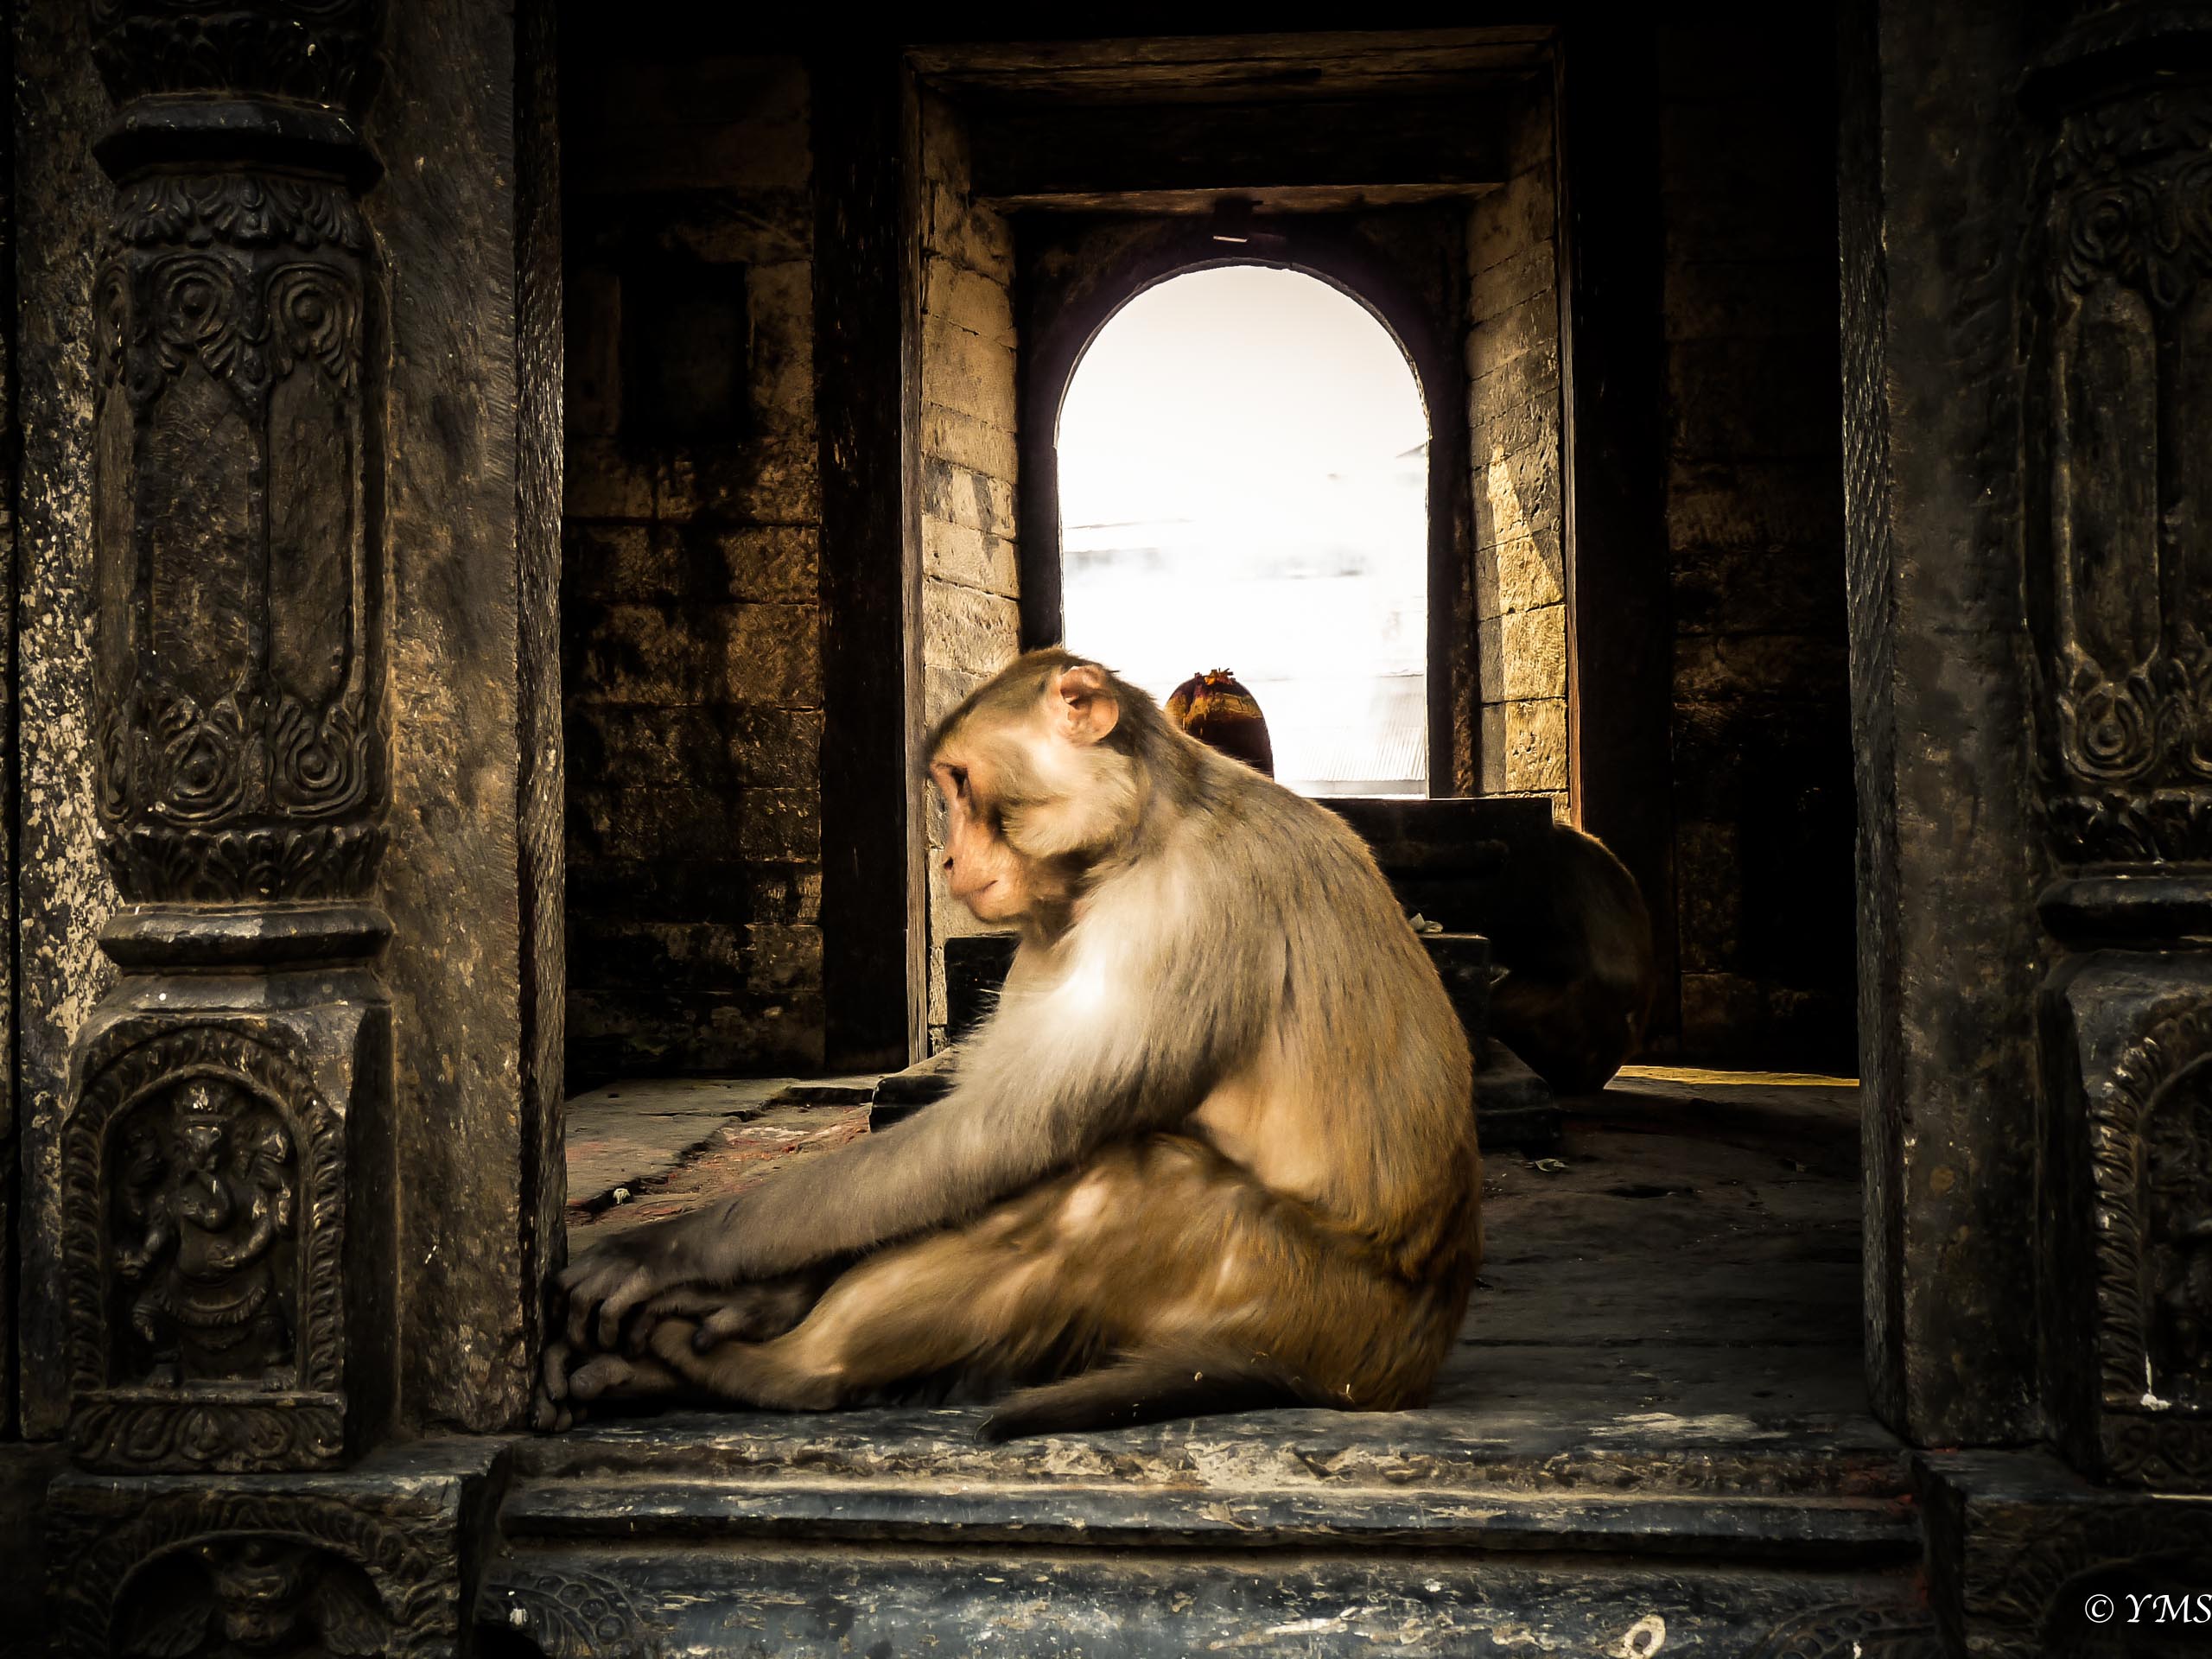 Nepal - Monkey meditating